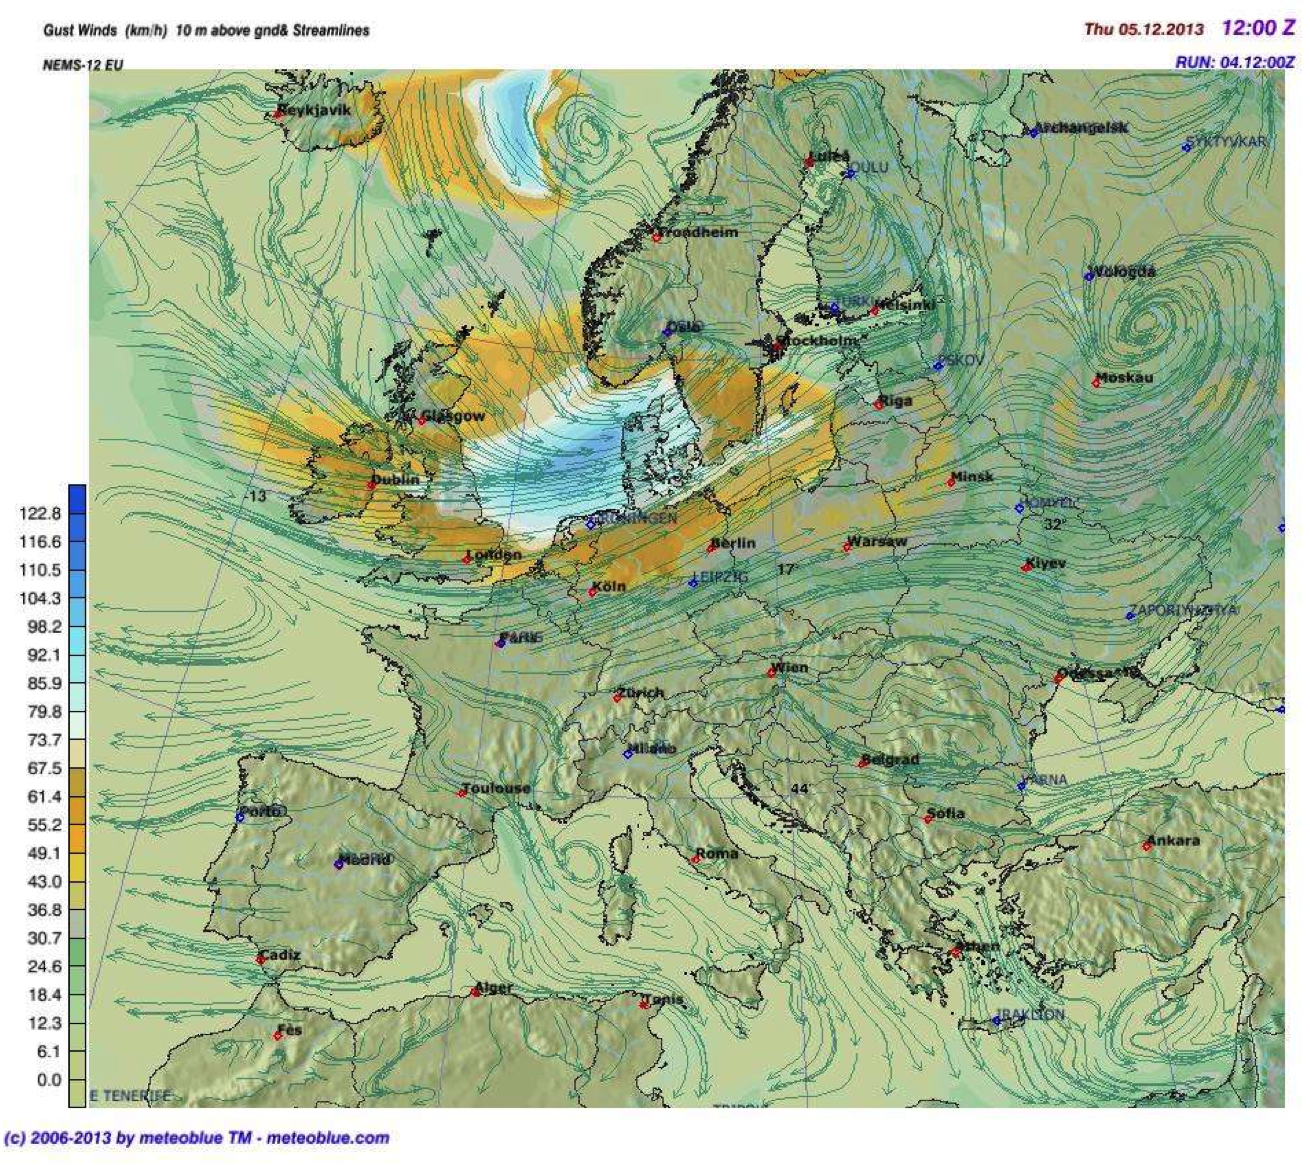 Windgeschwindigkeiten über Europa: Vorhersage für 05.12.2013, 13:00 Mitteleuropäische Zeit.